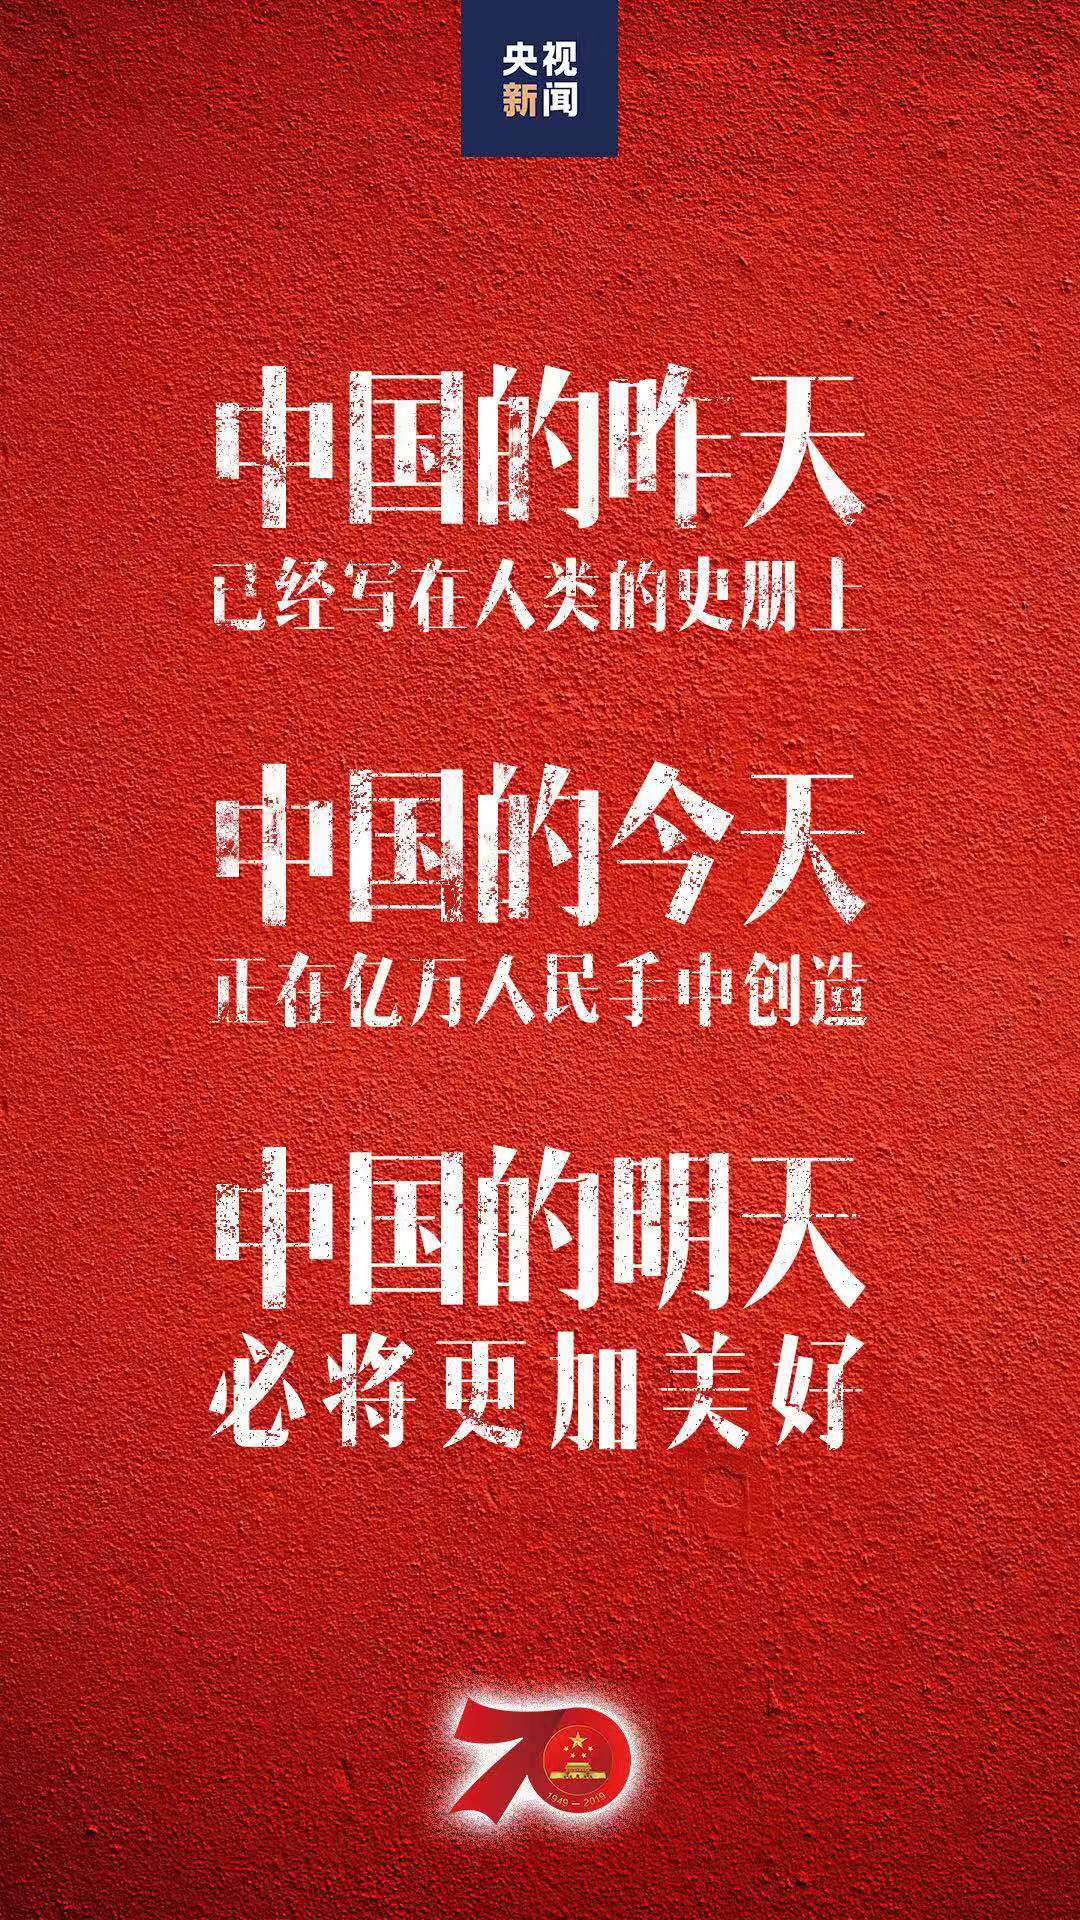 习近平在庆祝中华人民共和国成立70周年大会上发表重要讲话